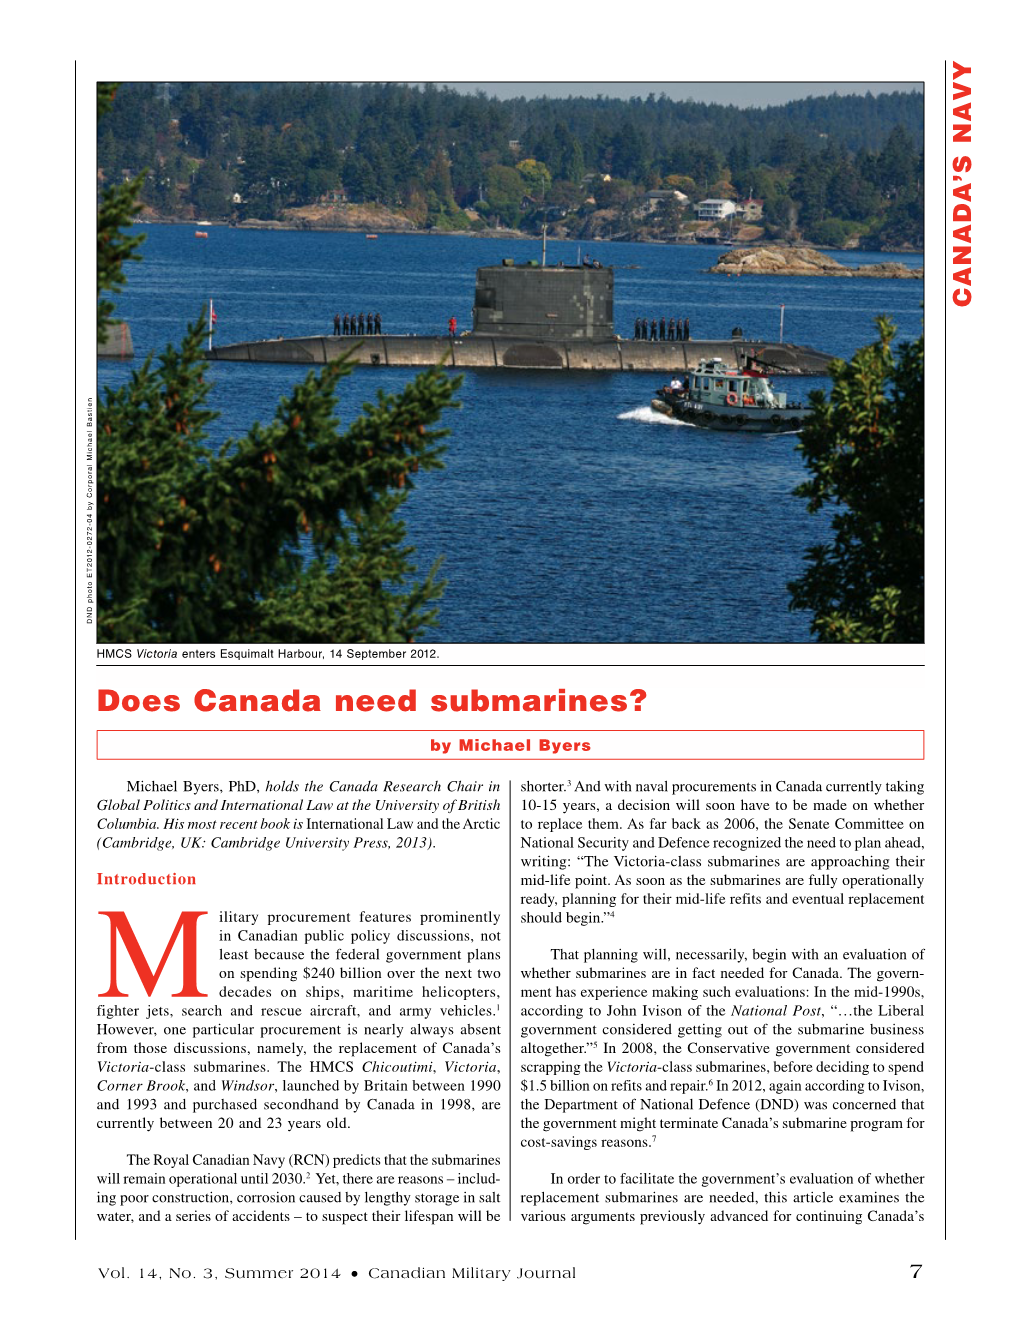 Does Canada Need Submarines?